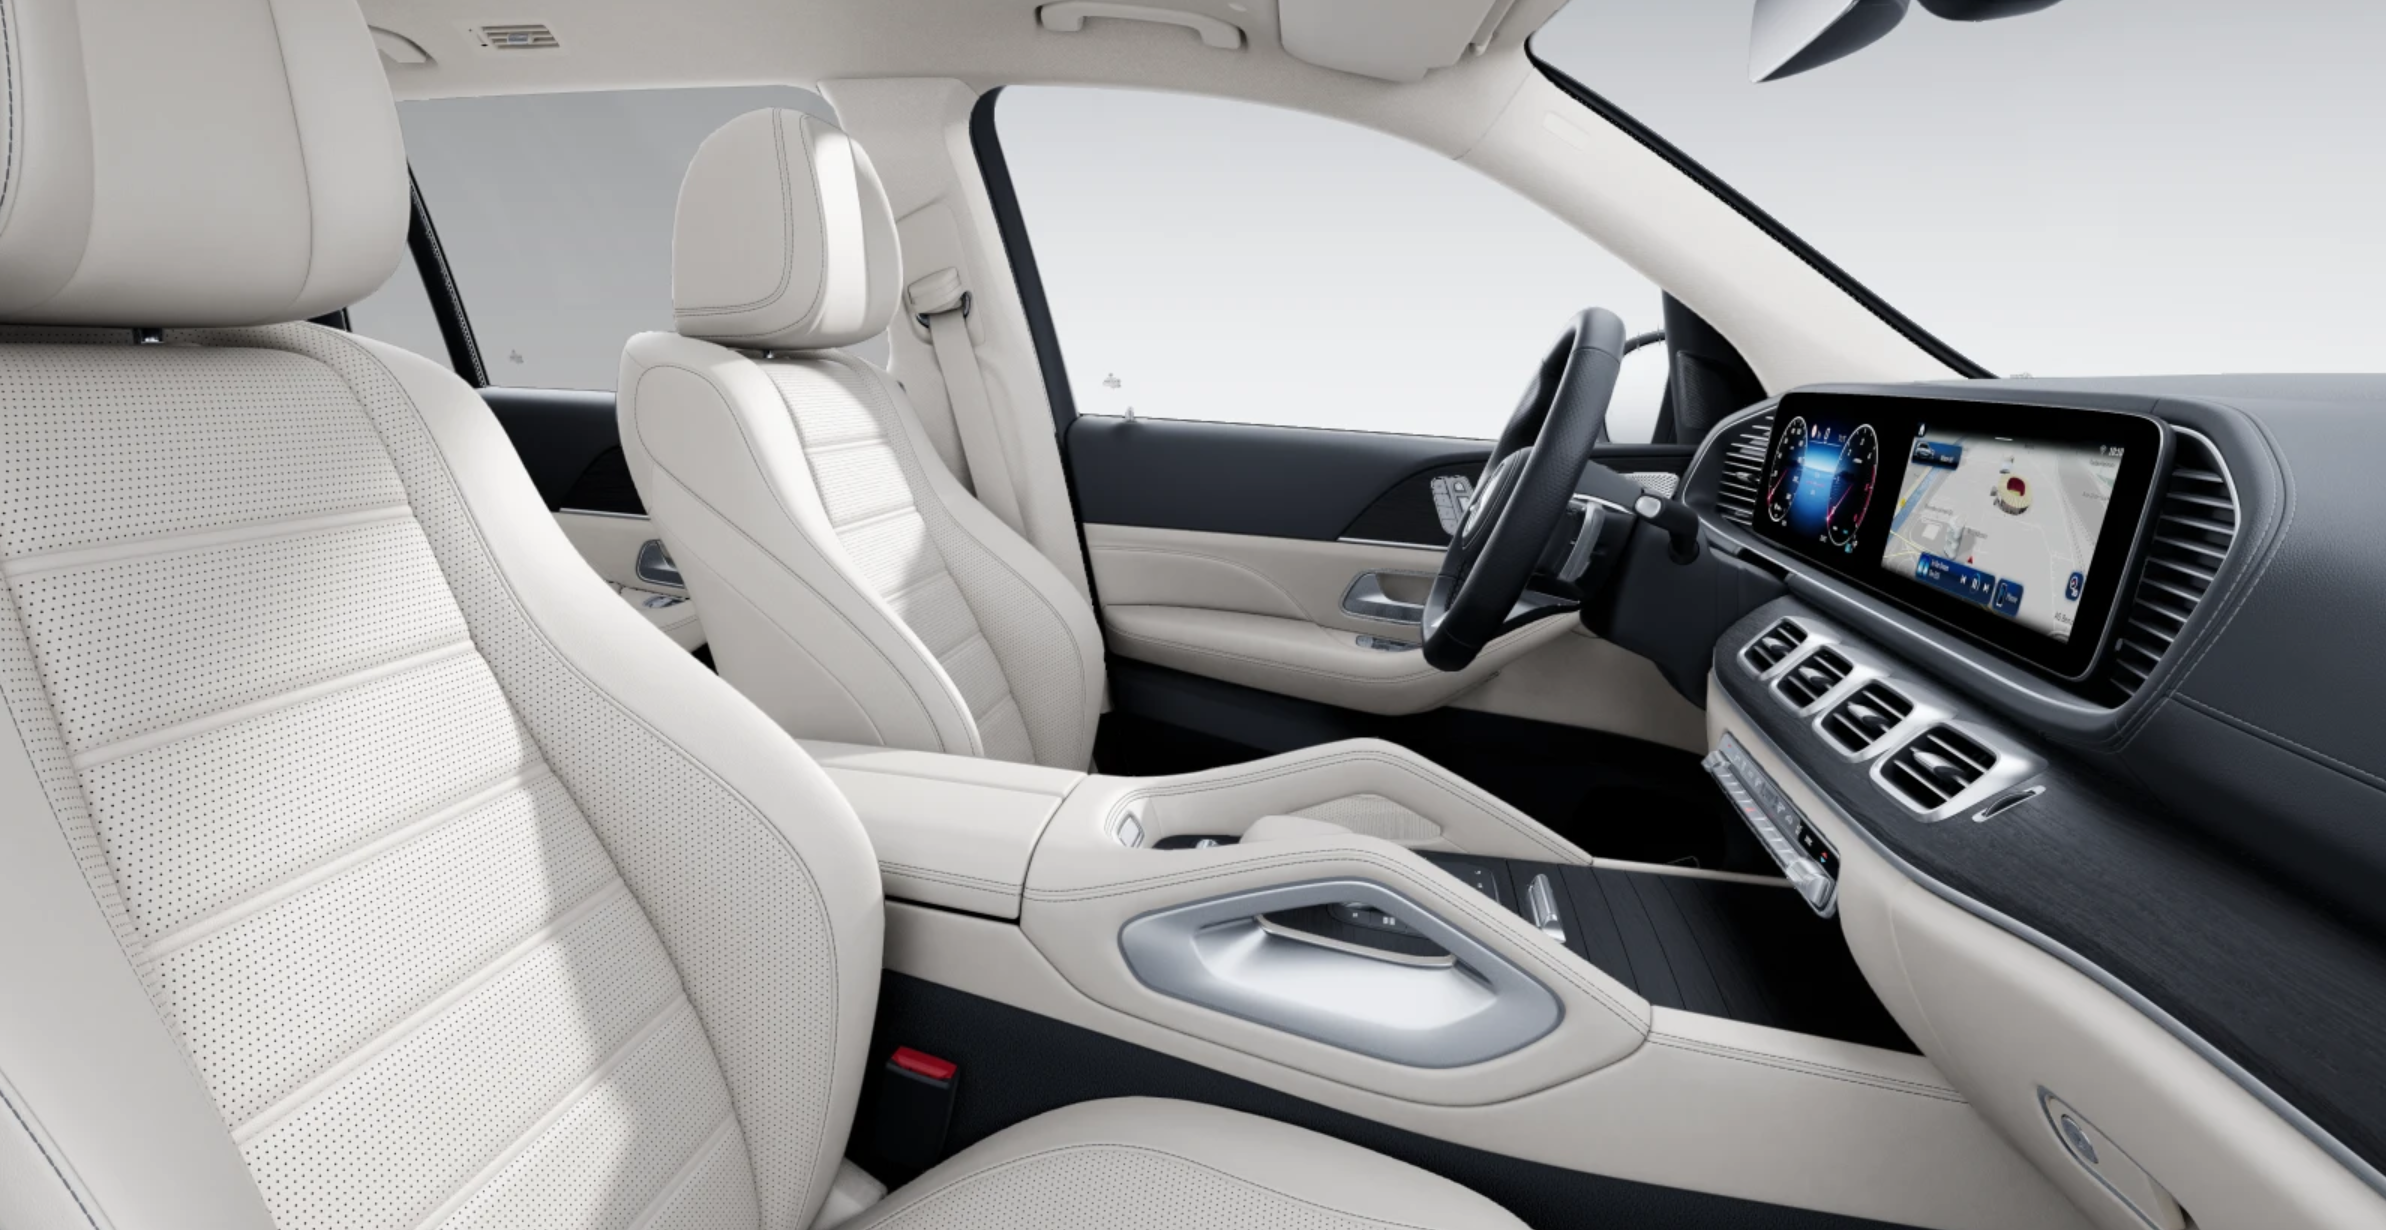 Mercedes GLS 350d 4matic AMG | nový facelift | k objednání do výroby | nejmodernější velké naftové SUV | luxusní béžový interiér | nové české auto skladem  | nafta 333 koní | perfektní výbava | nákup online na AUTOiBUY.com